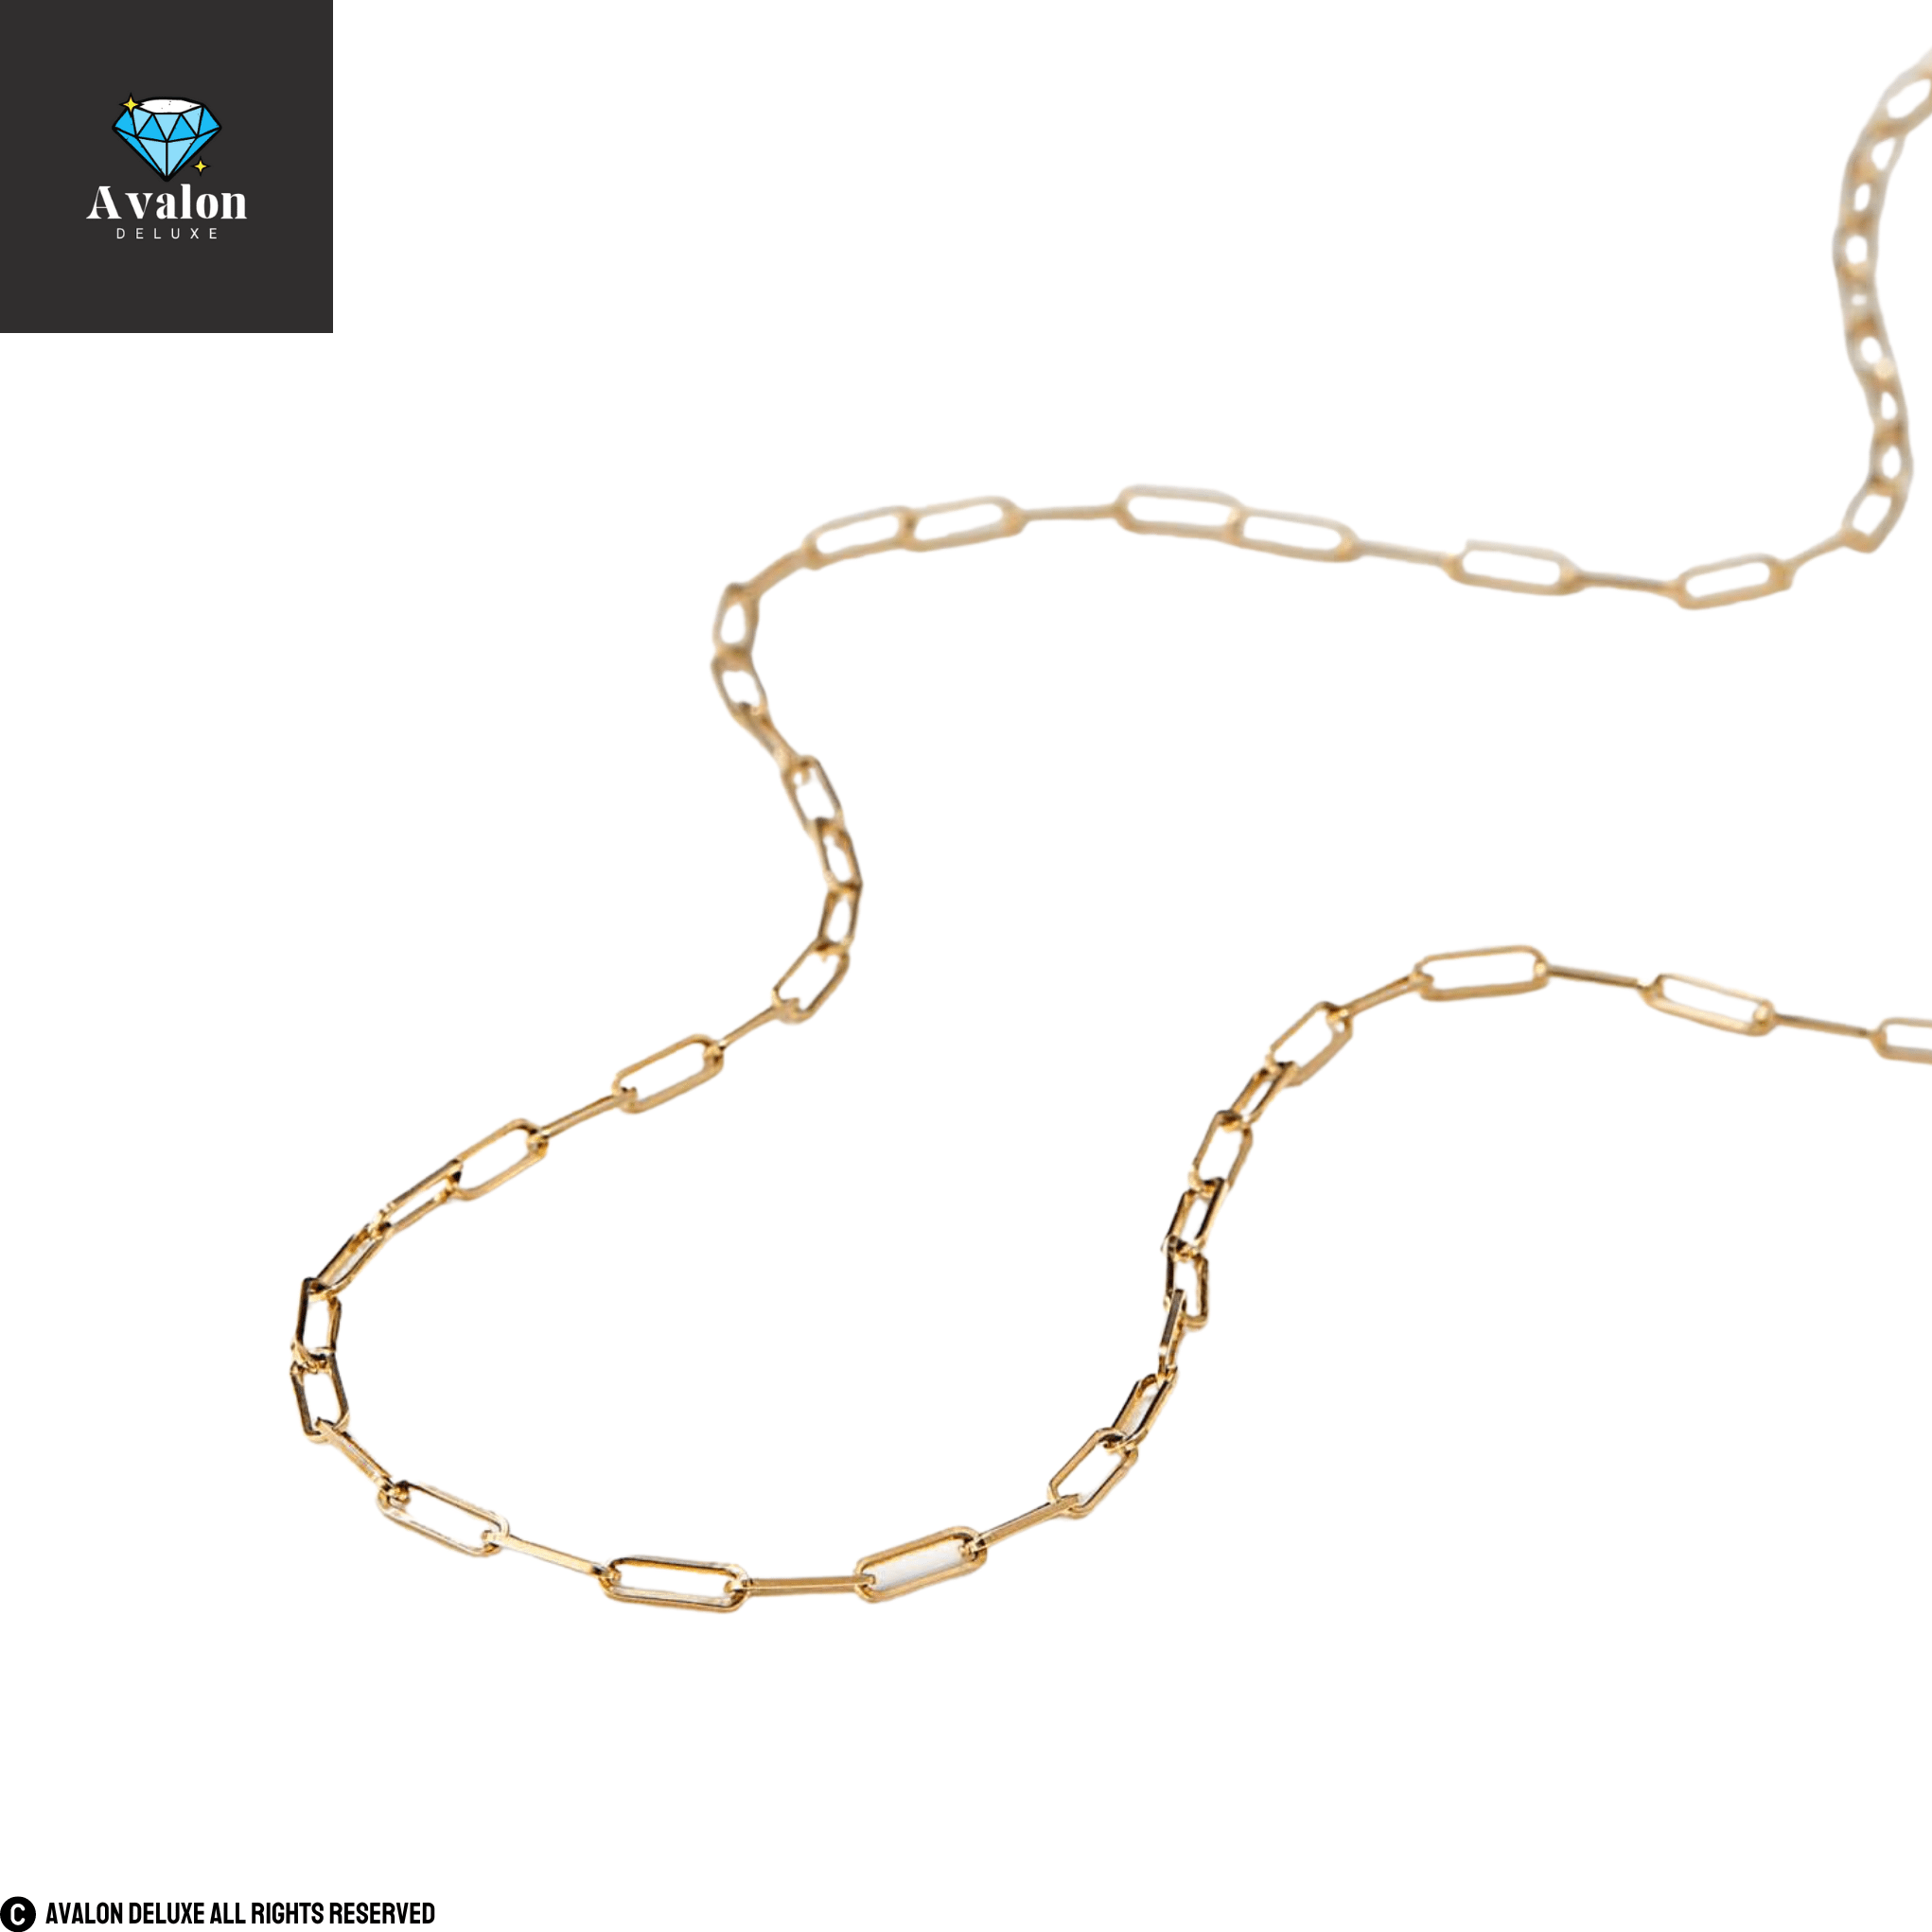 Boyfriend Bold Chain Necklace Gold 45 cm 6 mm 18 inch Schmuck Chunky necklace Gliederkette